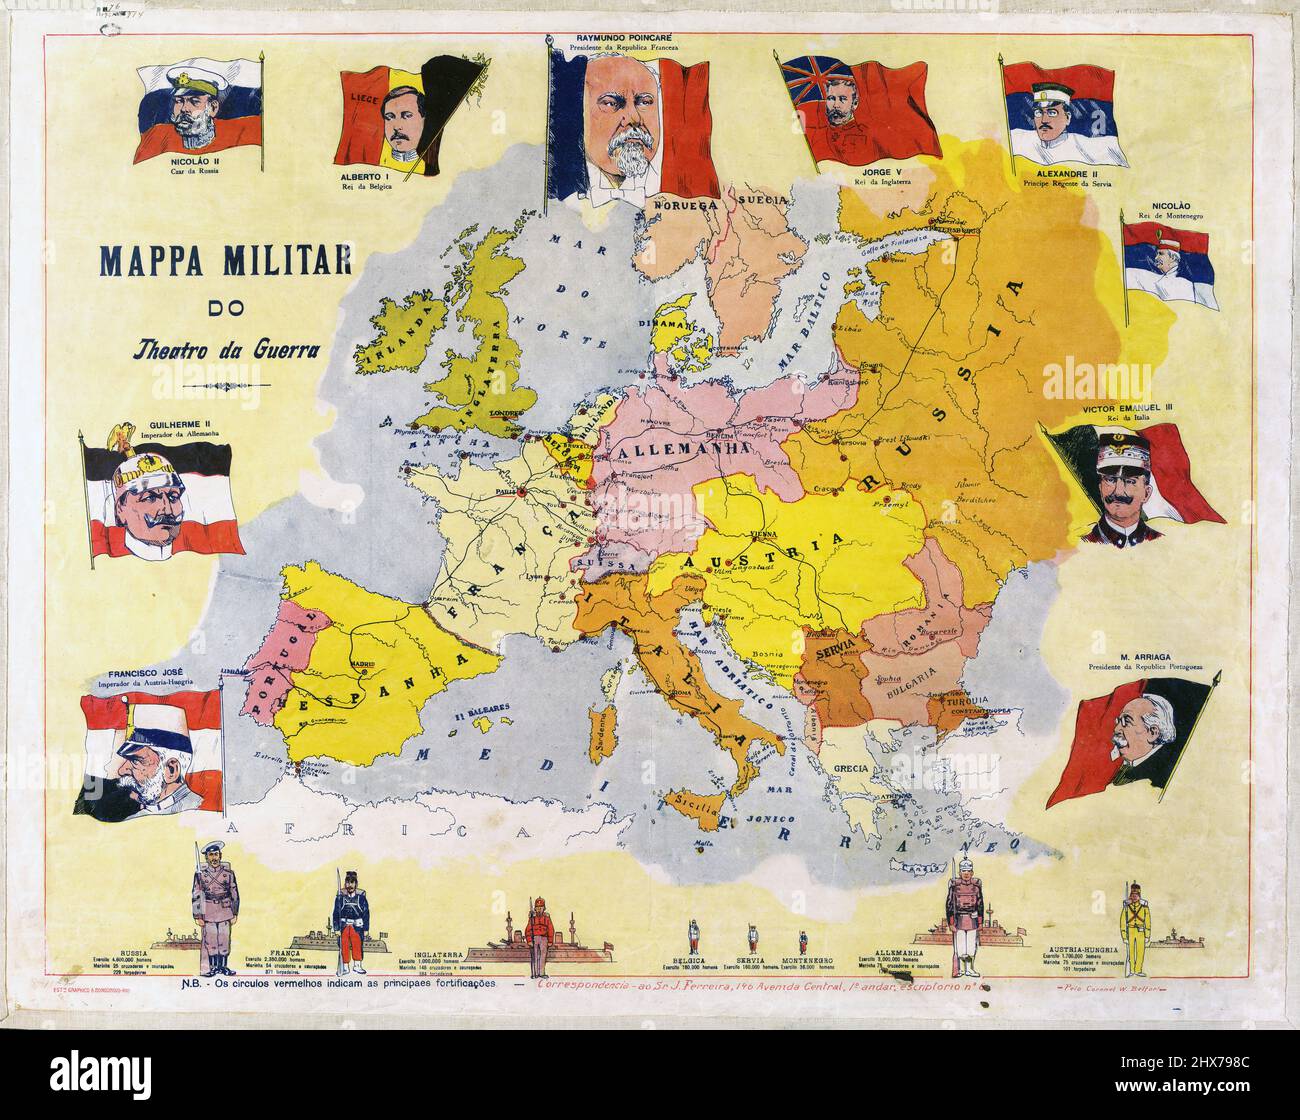 Militärische Karte des Theaters des Krieges - Mappa militar do Theatro da Guerra. 1914 von Belfort, W. Stockfoto